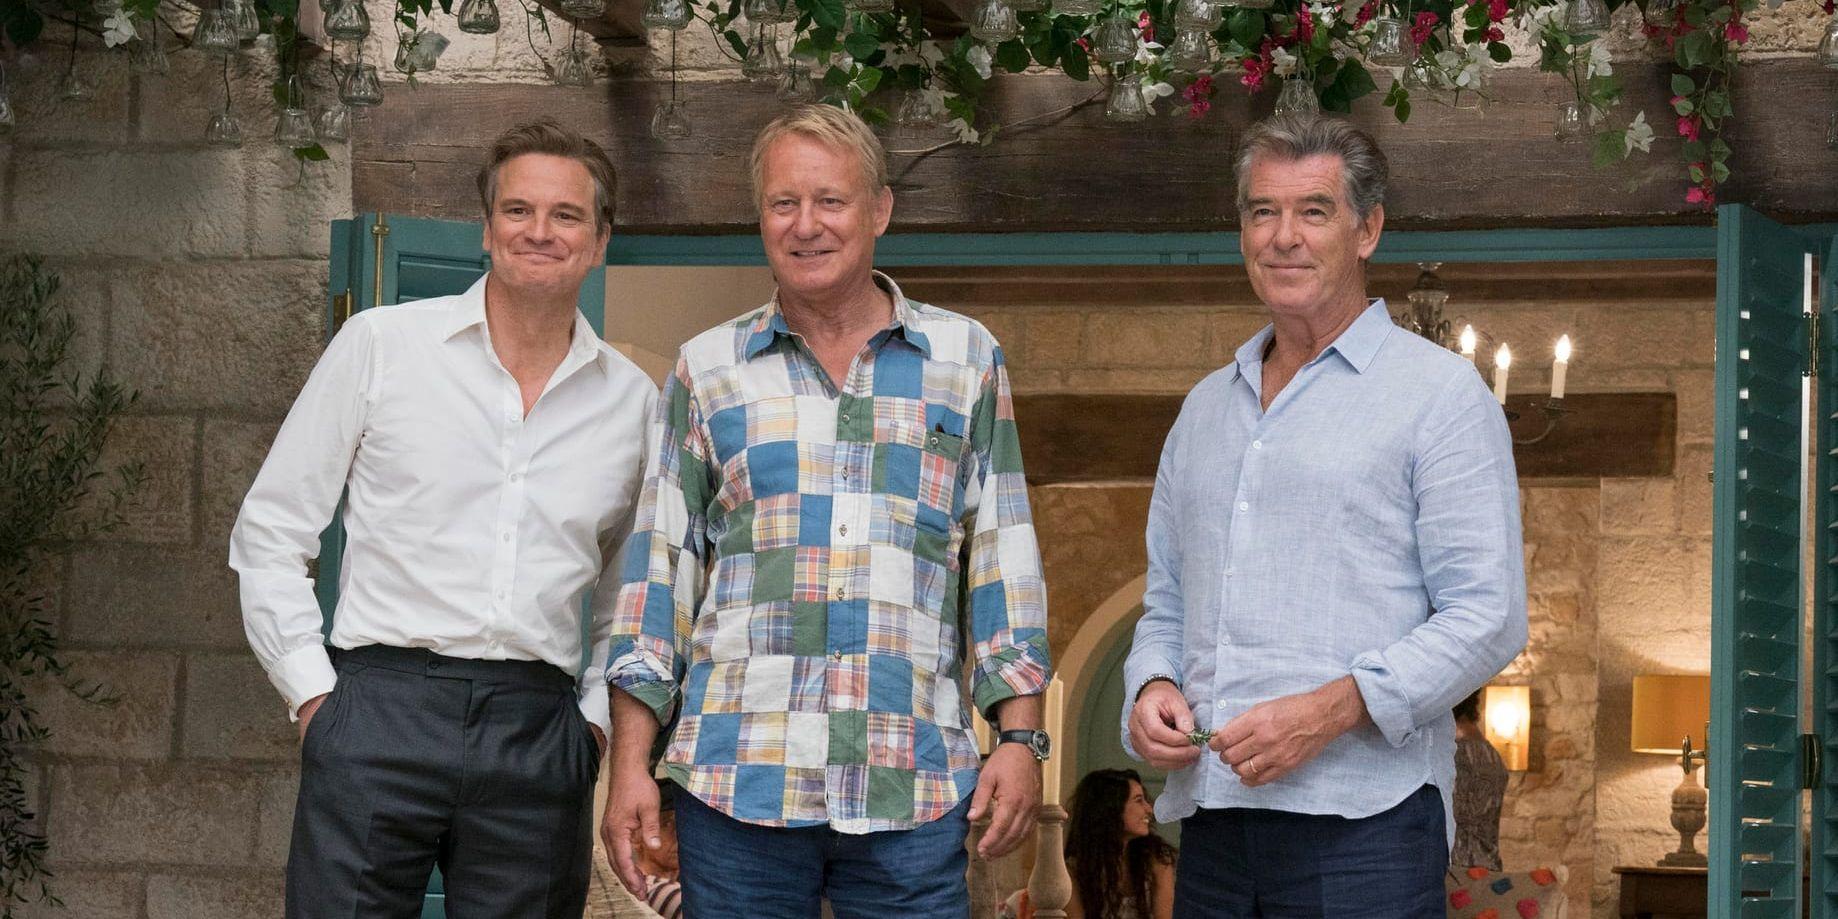 Skådespelarna Colin Firth, Stellan Skarsgård och Pierce Brosnan var med i "Mamma Mia! Here we go again", regisserad av Ol Parker. En av de mest sedda biofilmerna i Sverige 2018. Pressbild.